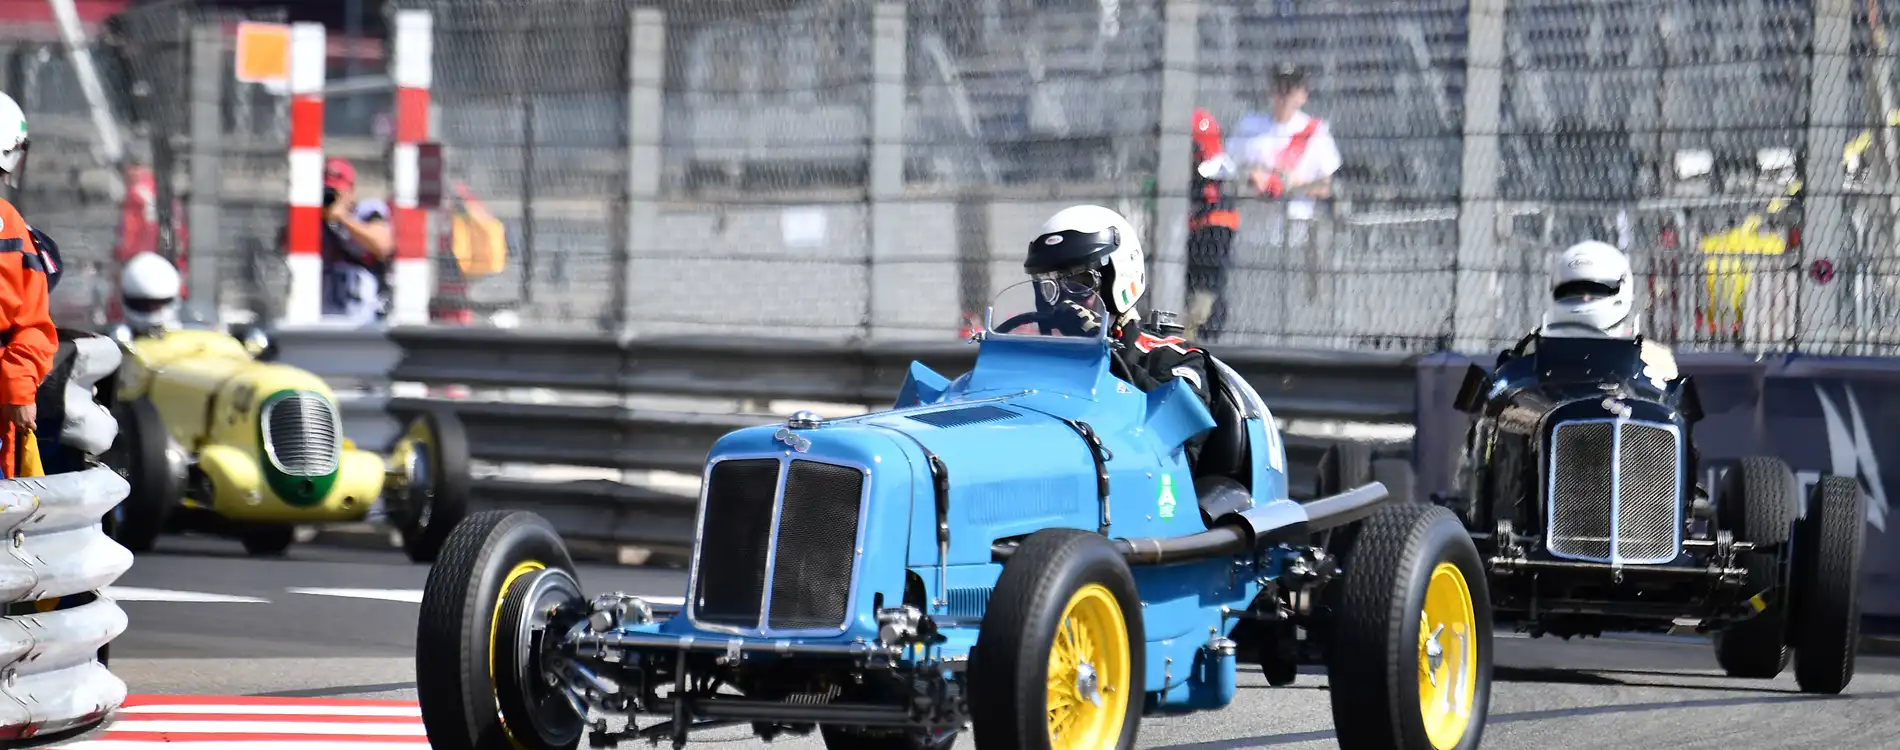 Monaco-Grand-Prix-Historique